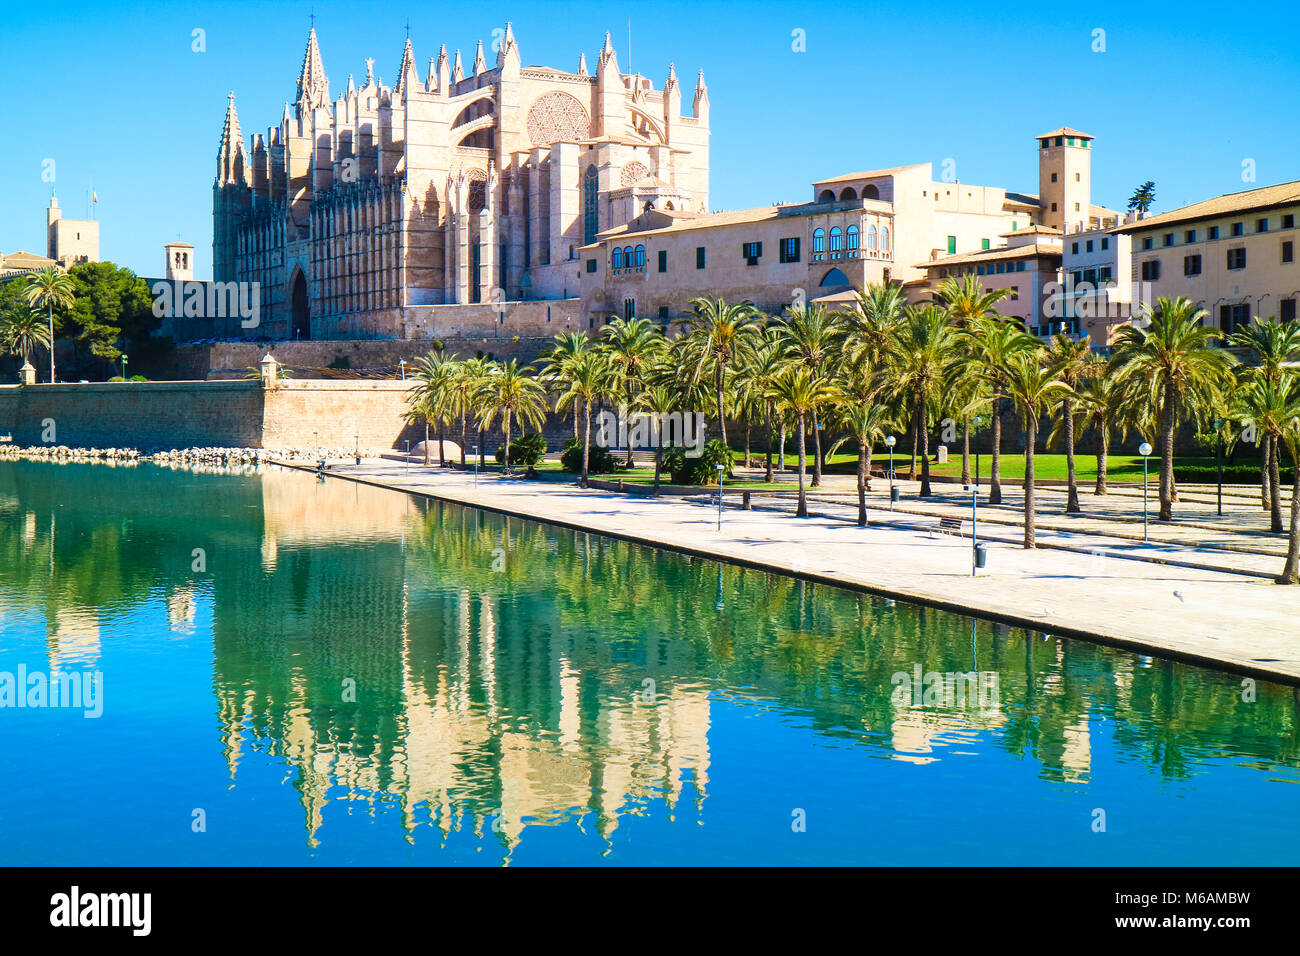 La Seu - Die berühmten mittelalterlichen gotischen Kathedrale. Palma de Mallorca, Spanien. Wasser Reflexion. Stockfoto